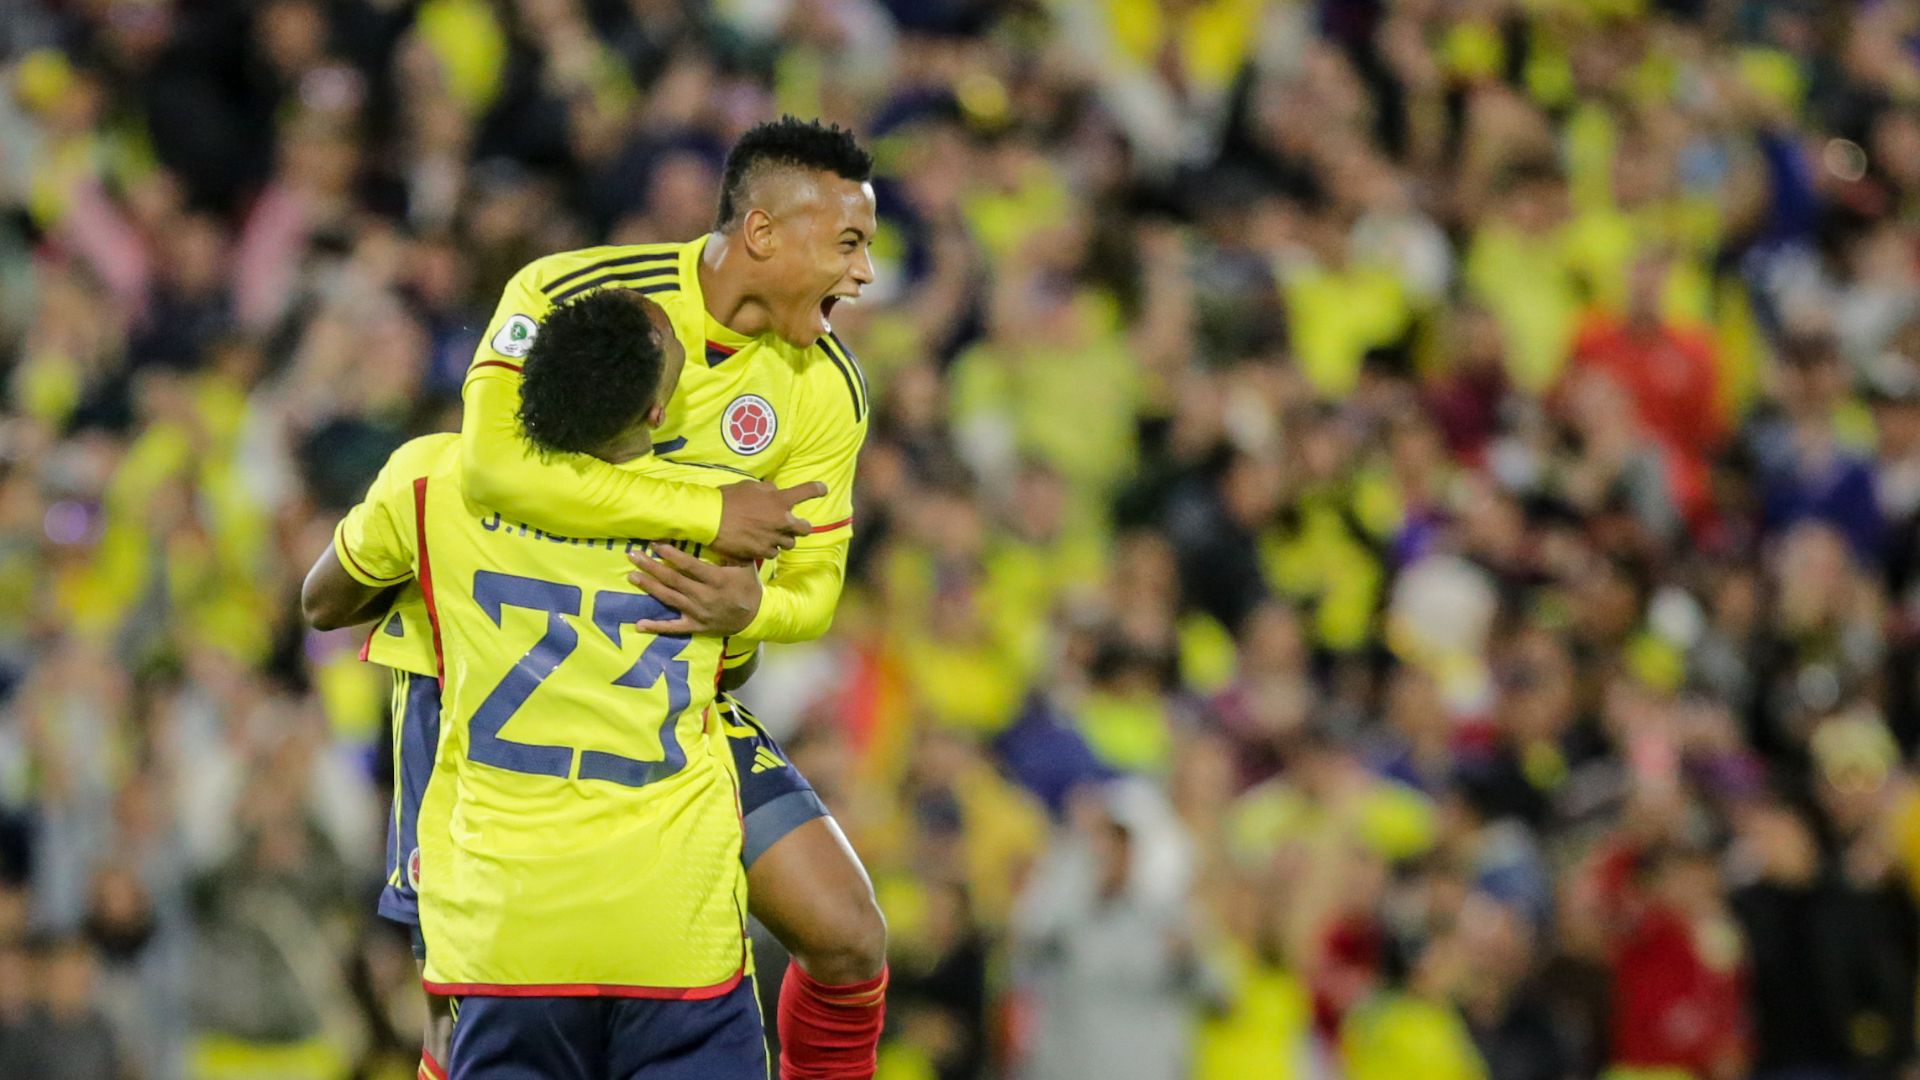 La selección Colombia se mide ante Brasil, el mejor equipo del Sudamericano sub-20, por un cupo al Mundial 